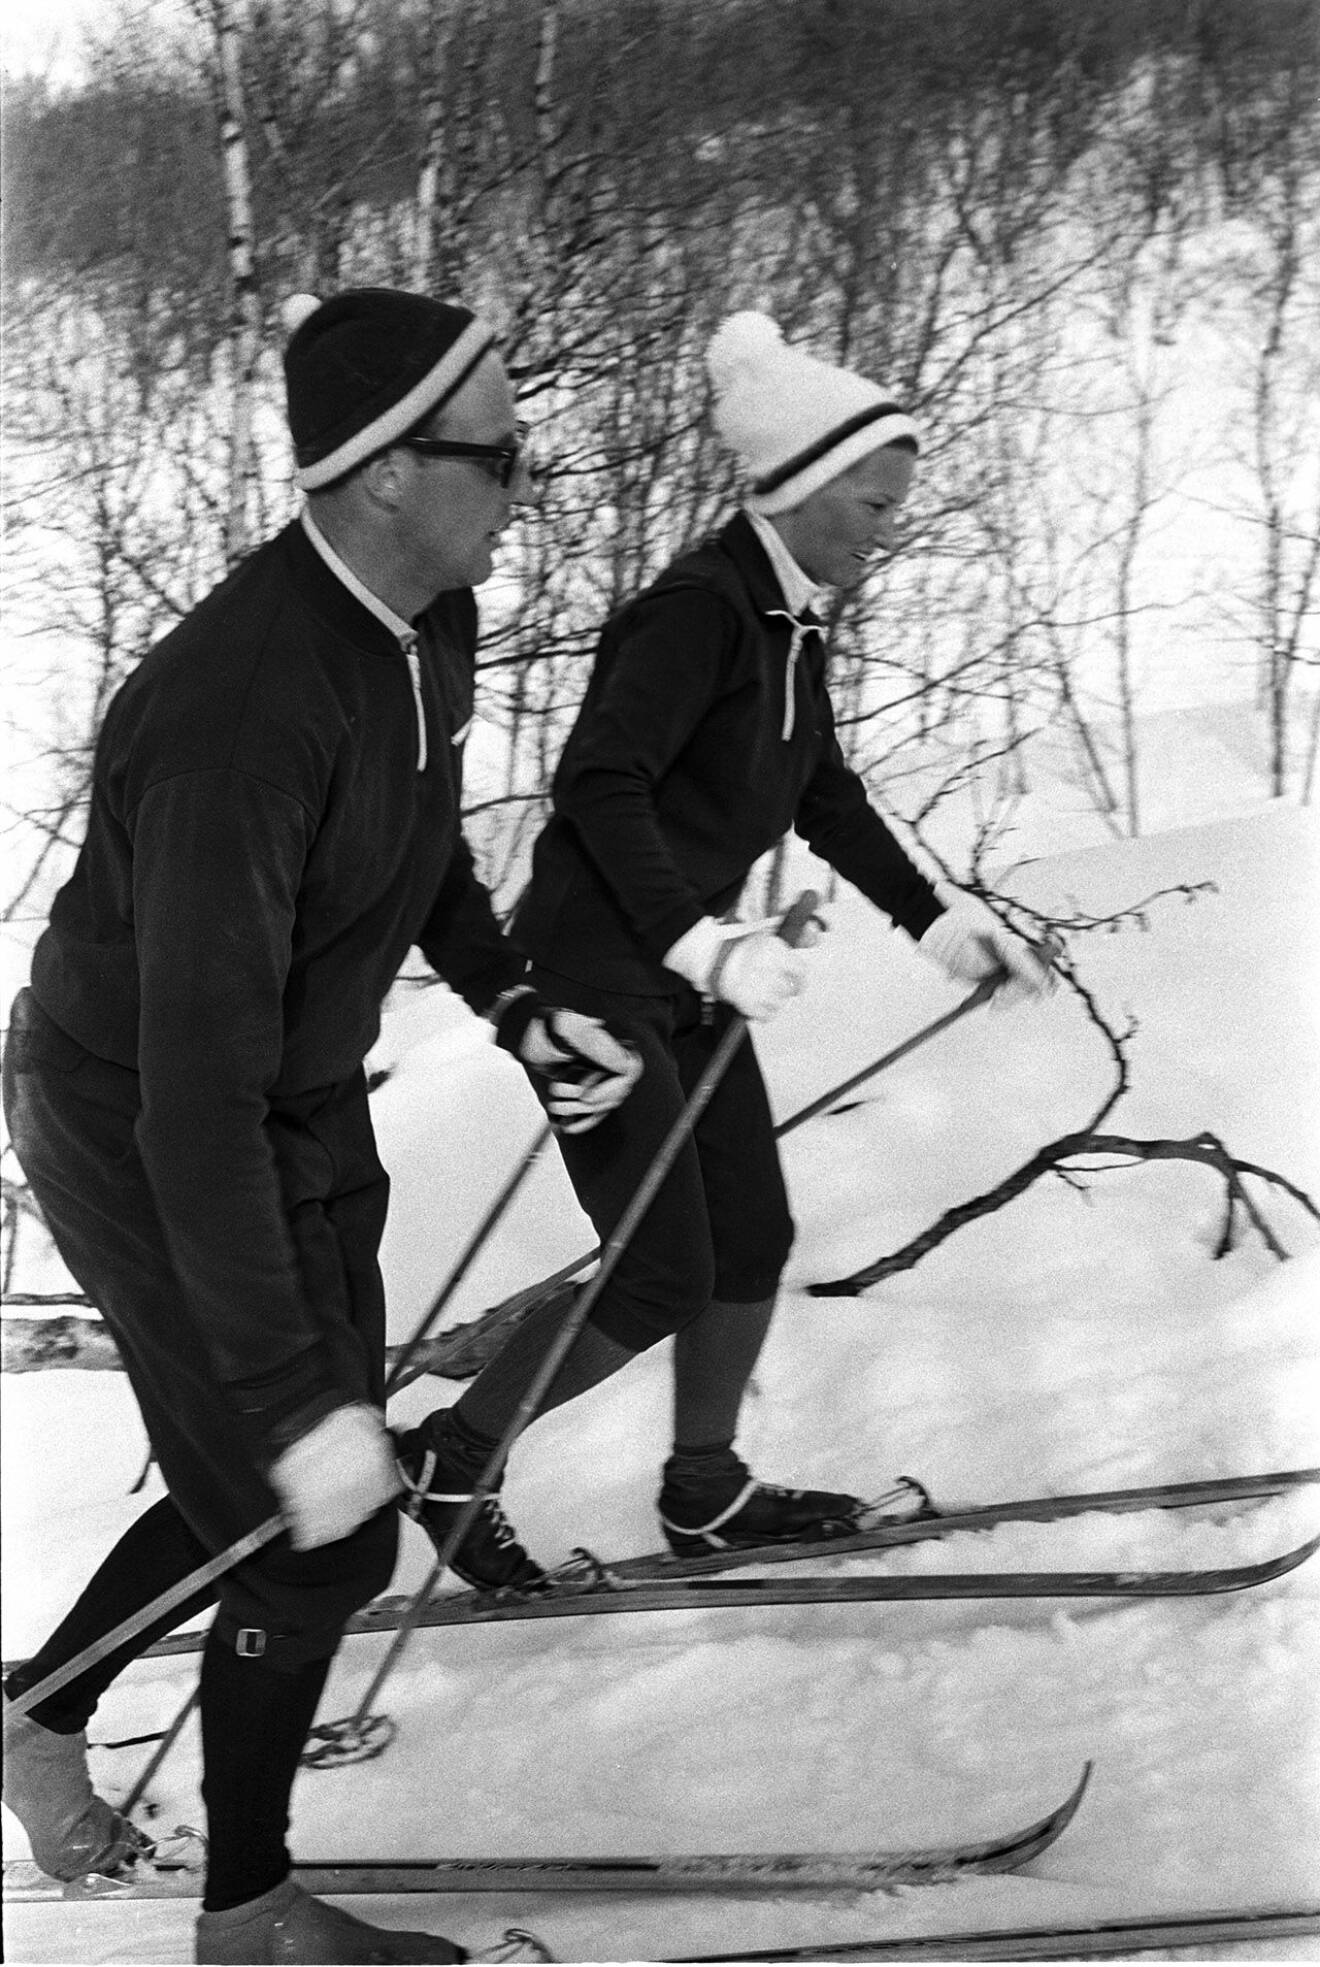 Harald och Sonja åker skidor